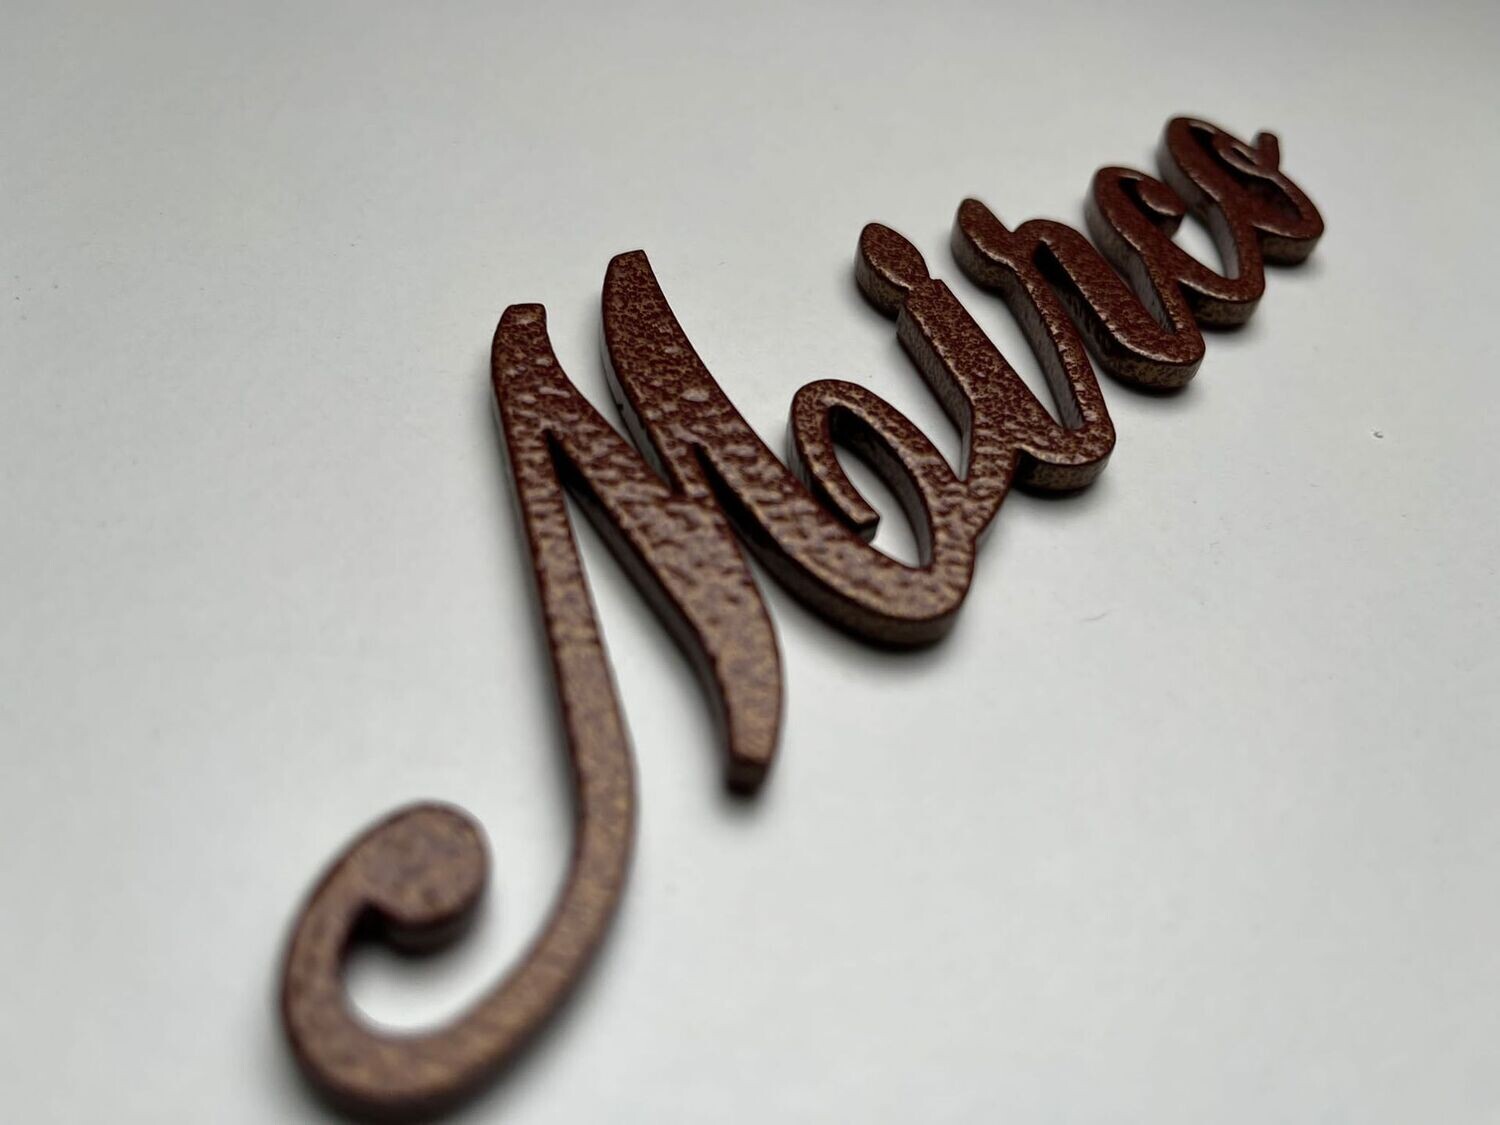 Buchstaben aus Edelstahl in Bronze lackiert - zusammenhängend und selbstklebend
Dicke: 5mm